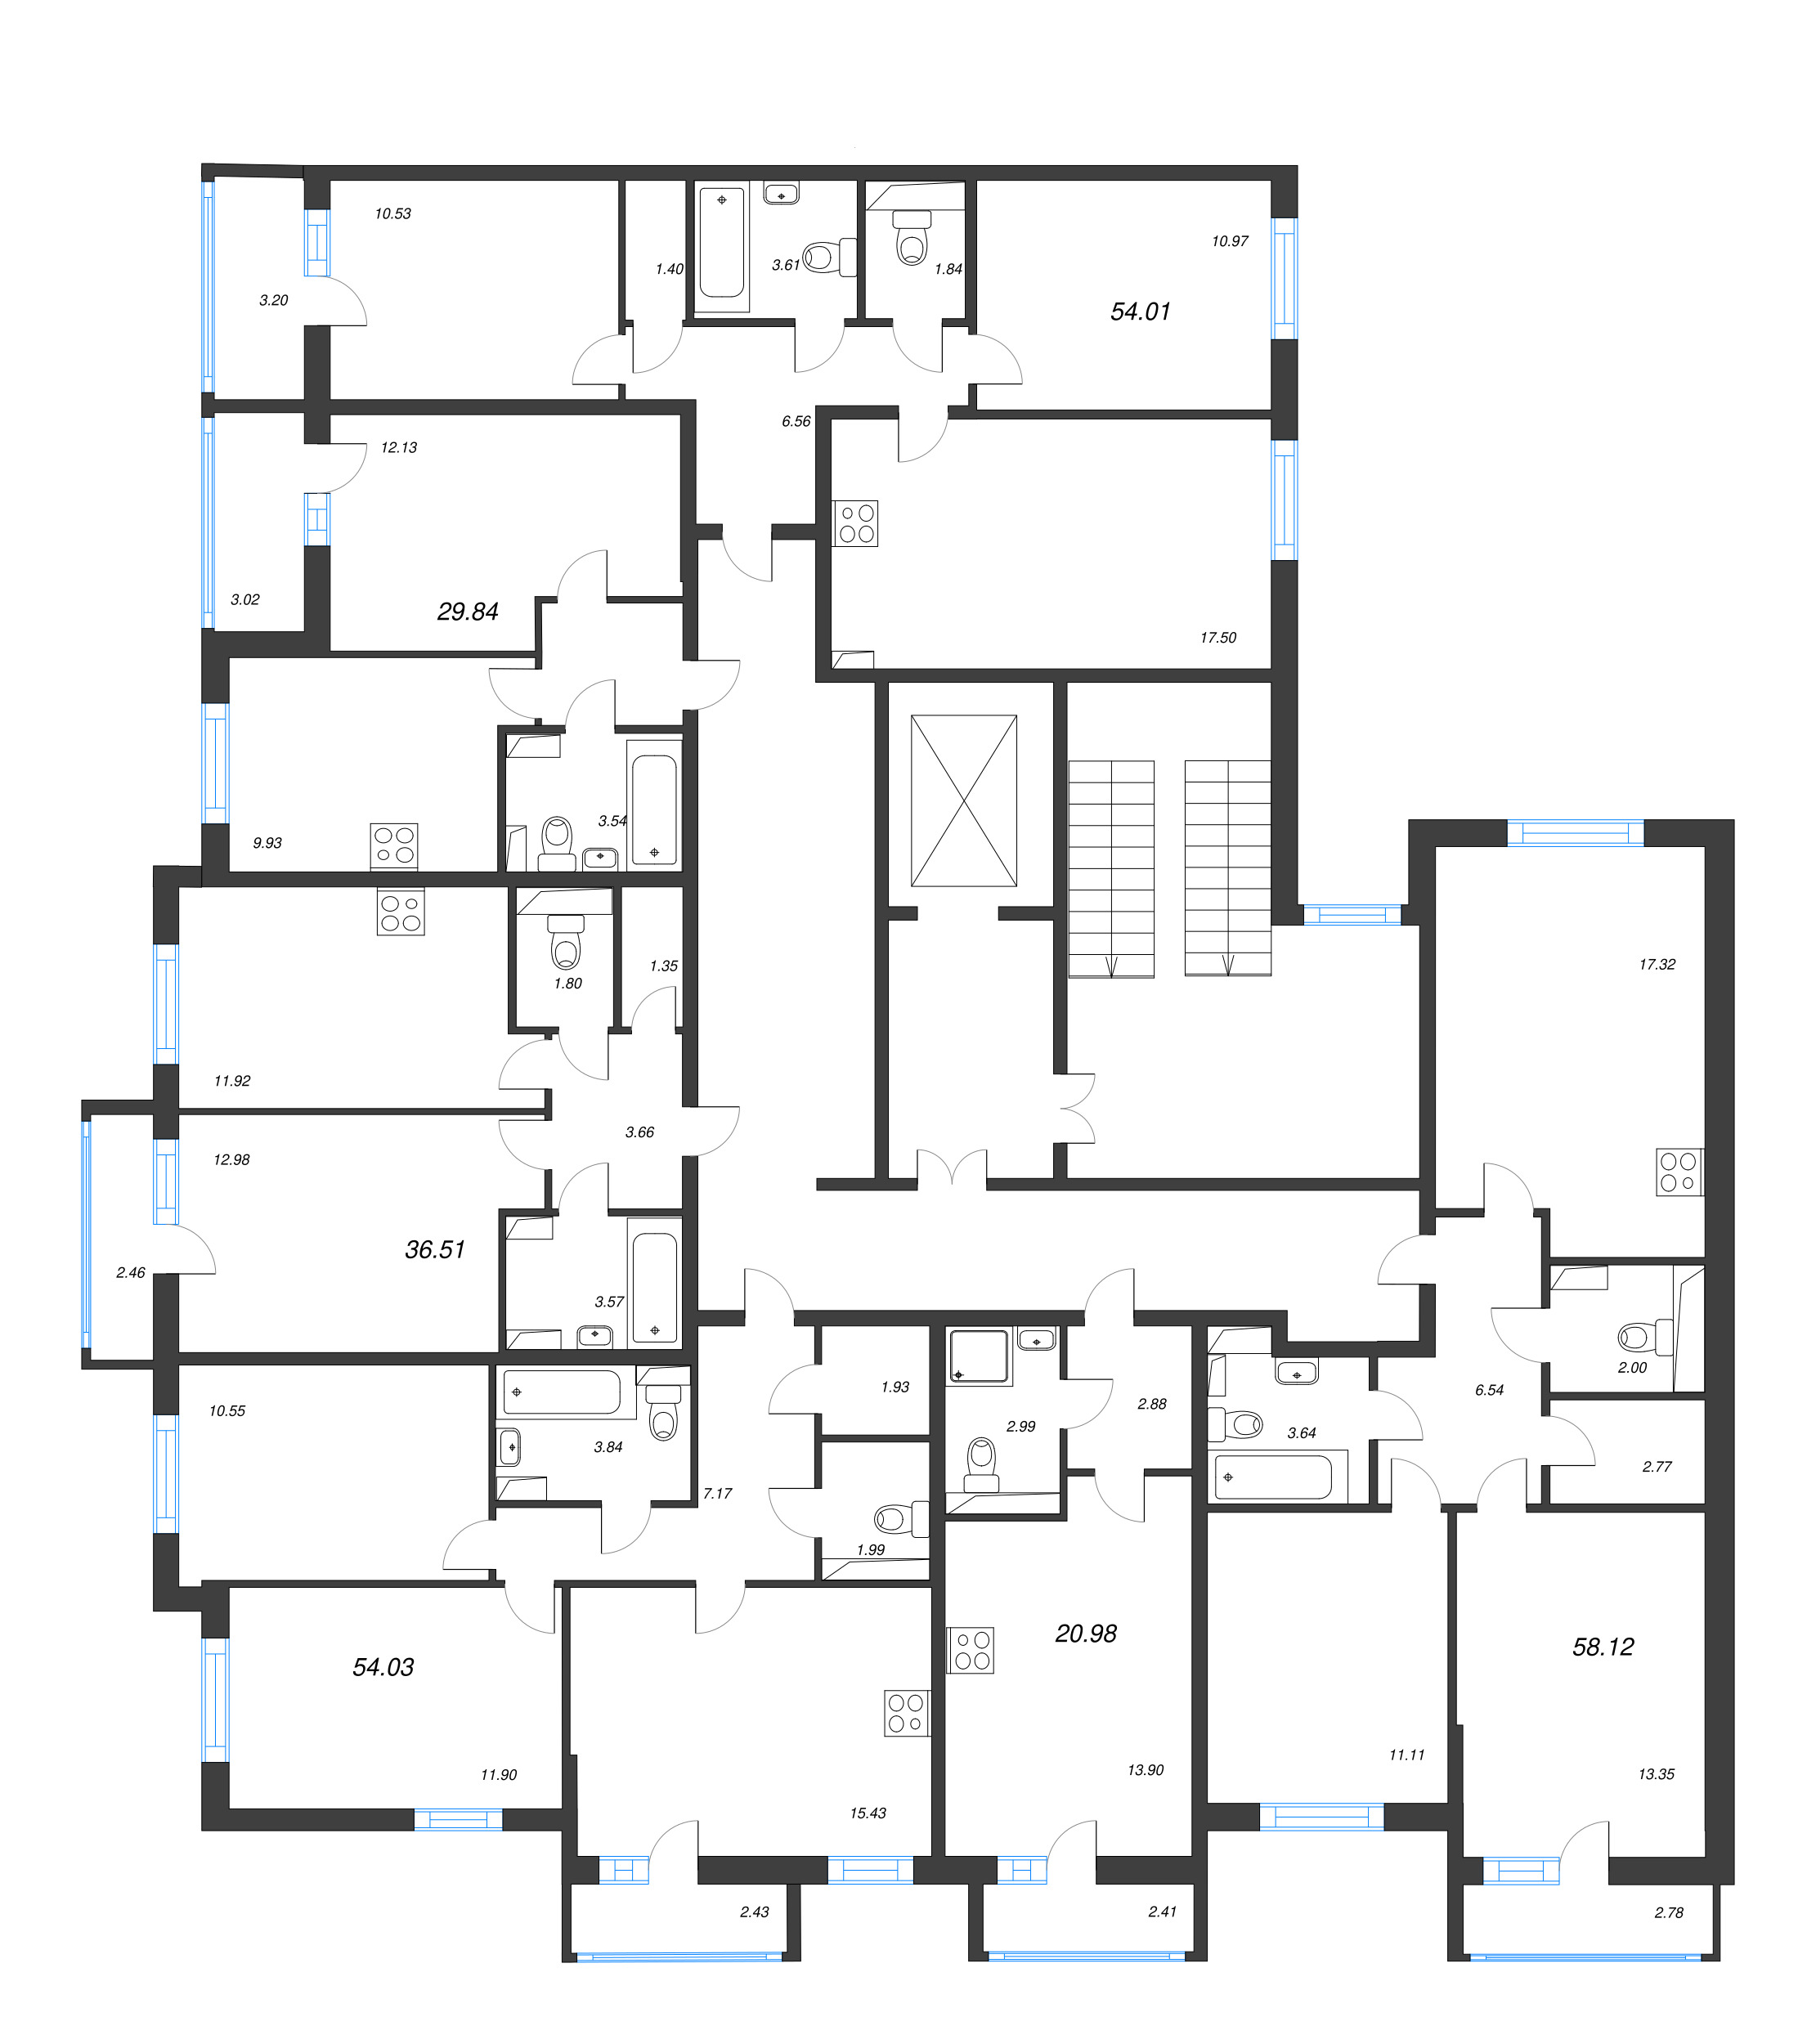 Квартира-студия, 20.98 м² в ЖК "Кинопарк" - планировка этажа